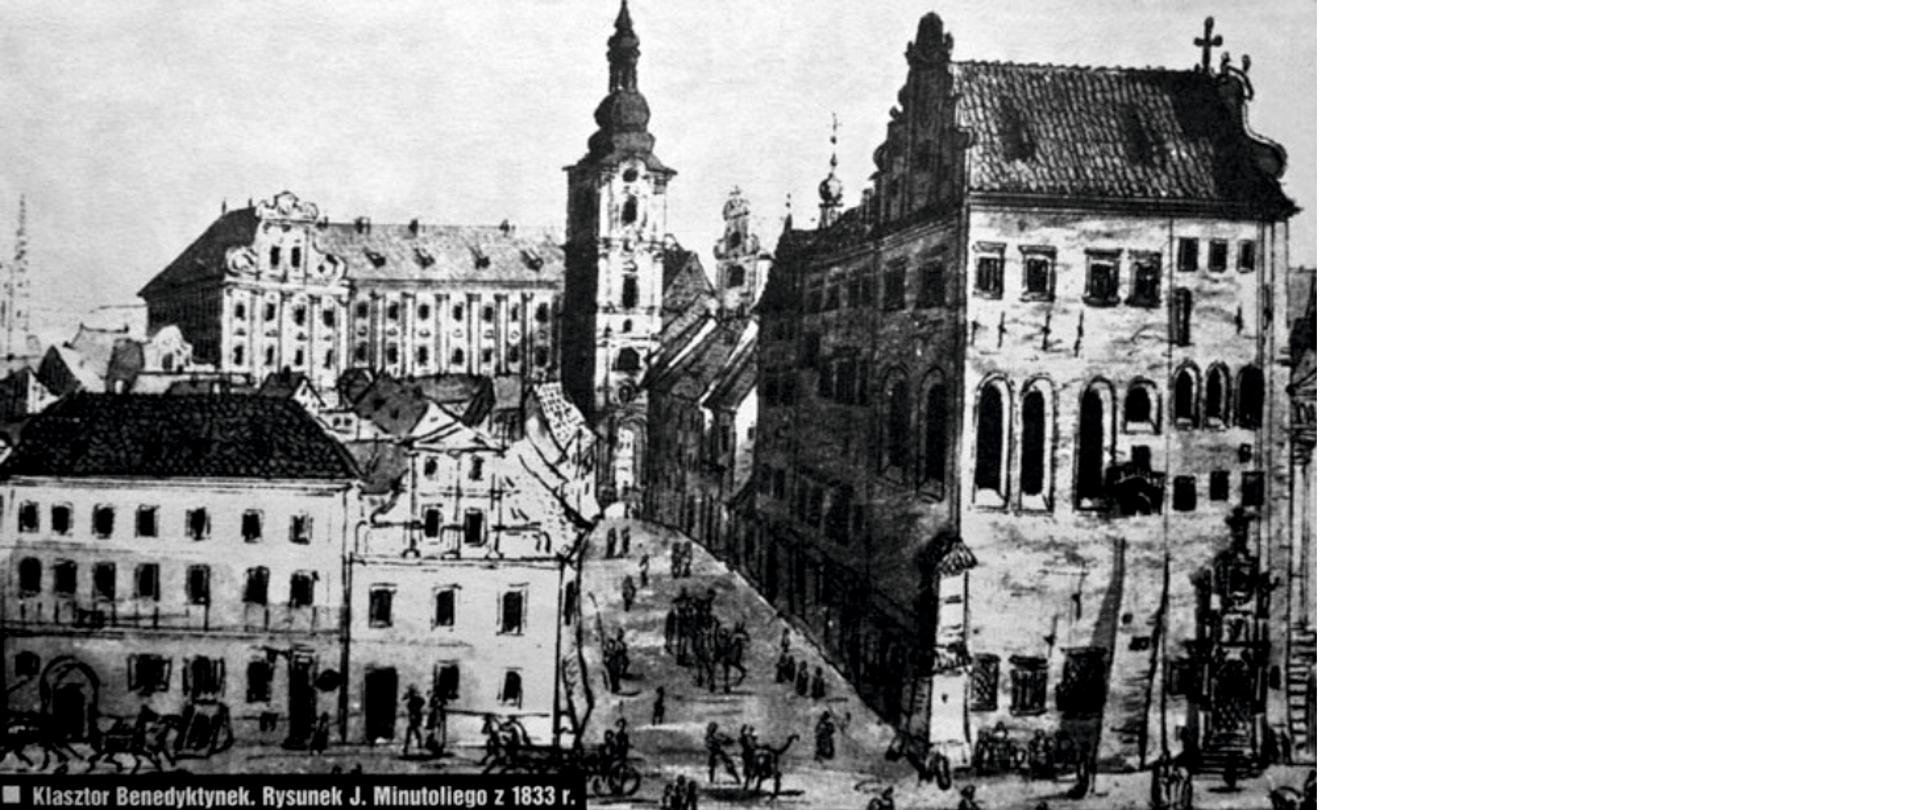 Rysunek czarno biały, po lewej zabudowa kamienic, po prawej widoczny budynek klasztorny, pomiędzy nimi ulica na której widać mieszkańców, w głębi wieża kościelna.